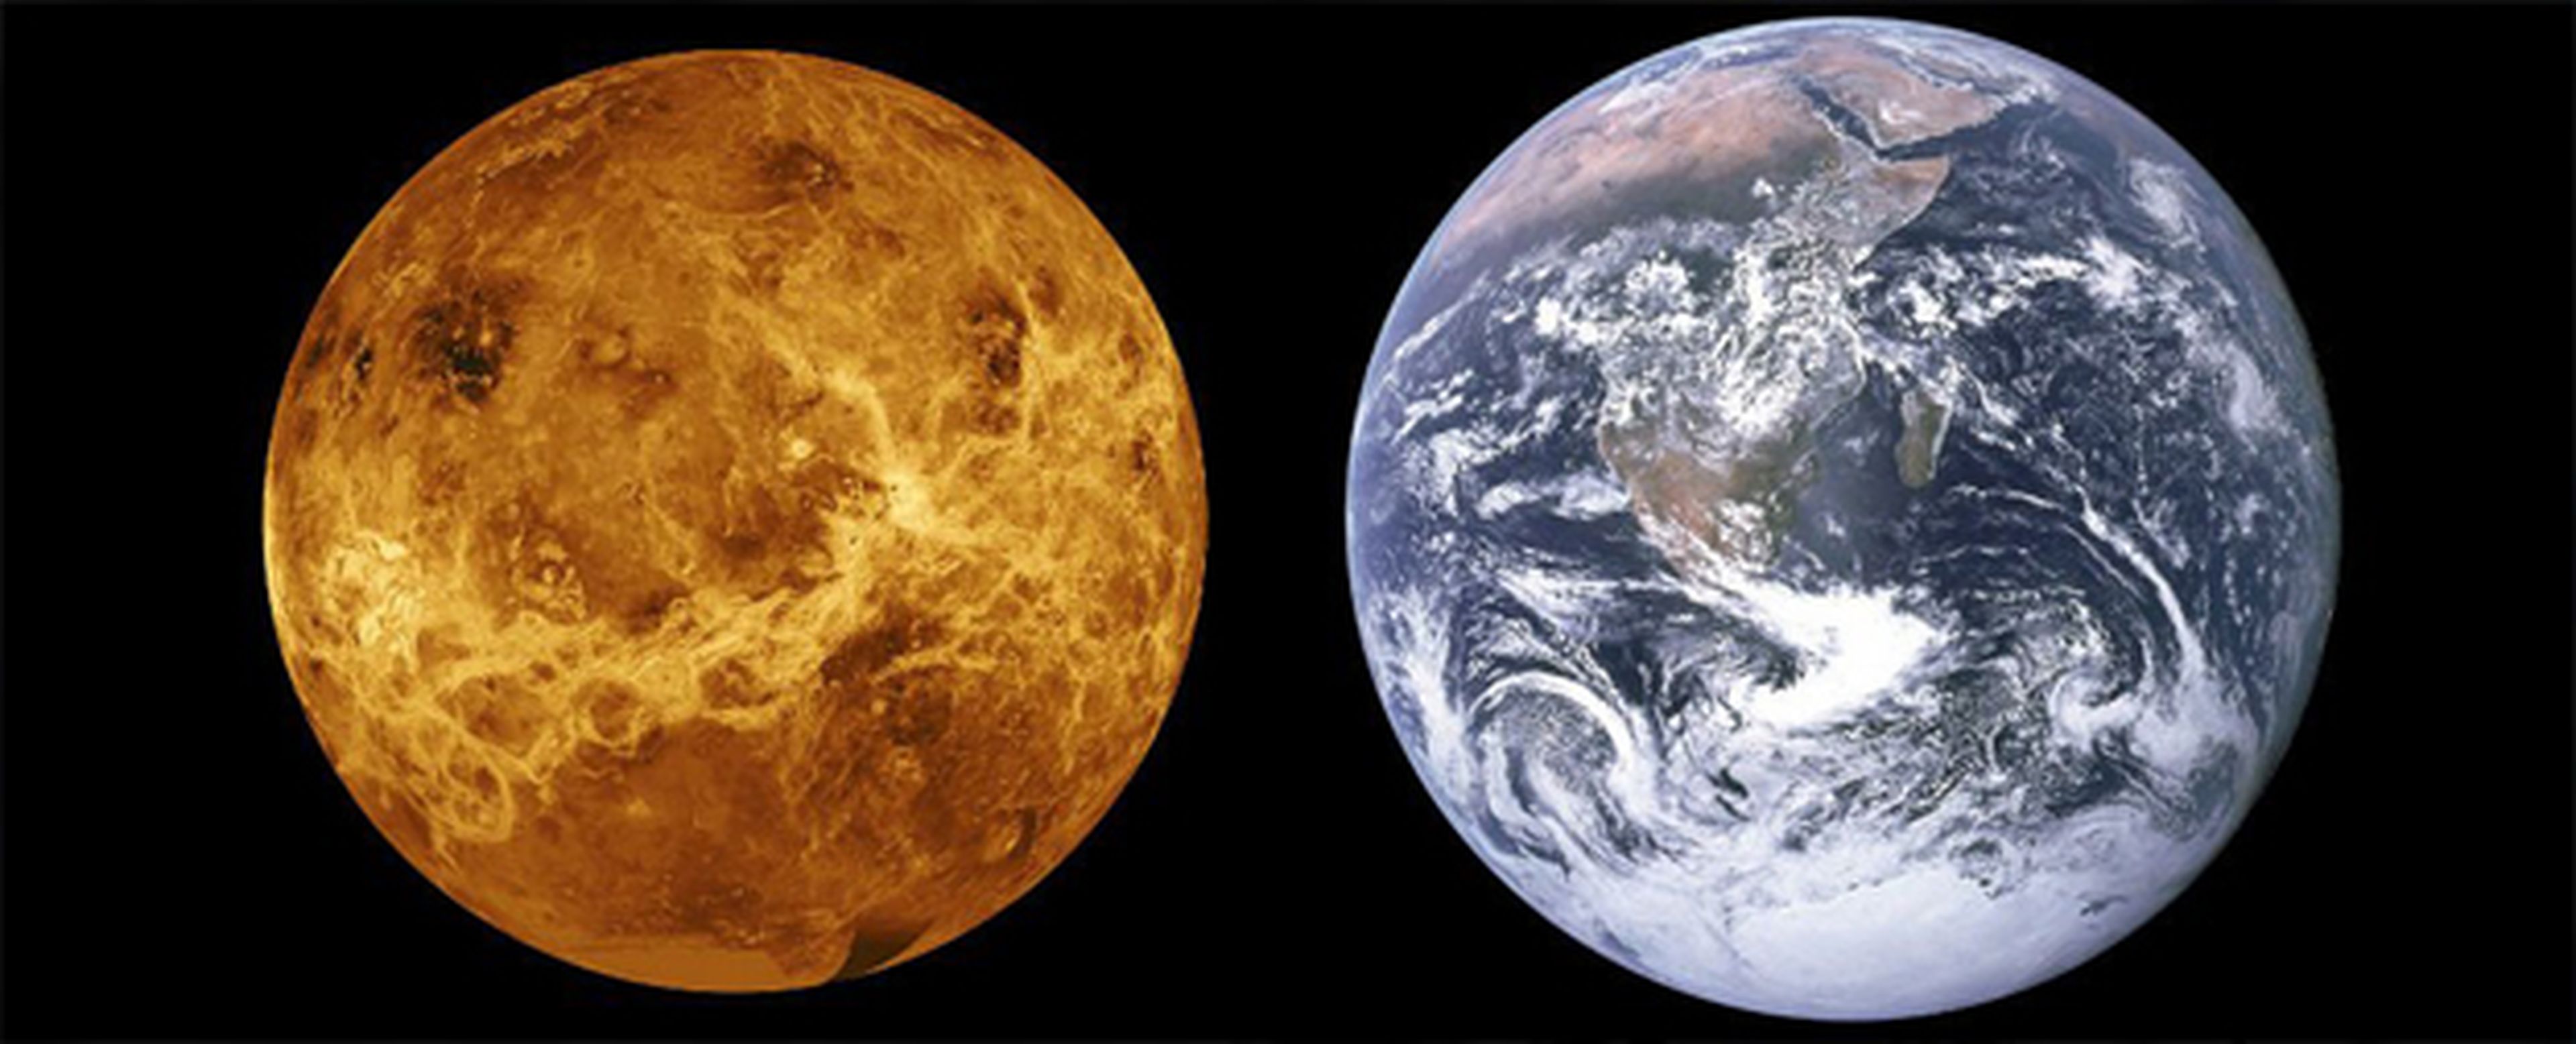 Comparativa de Venus y la Tierra